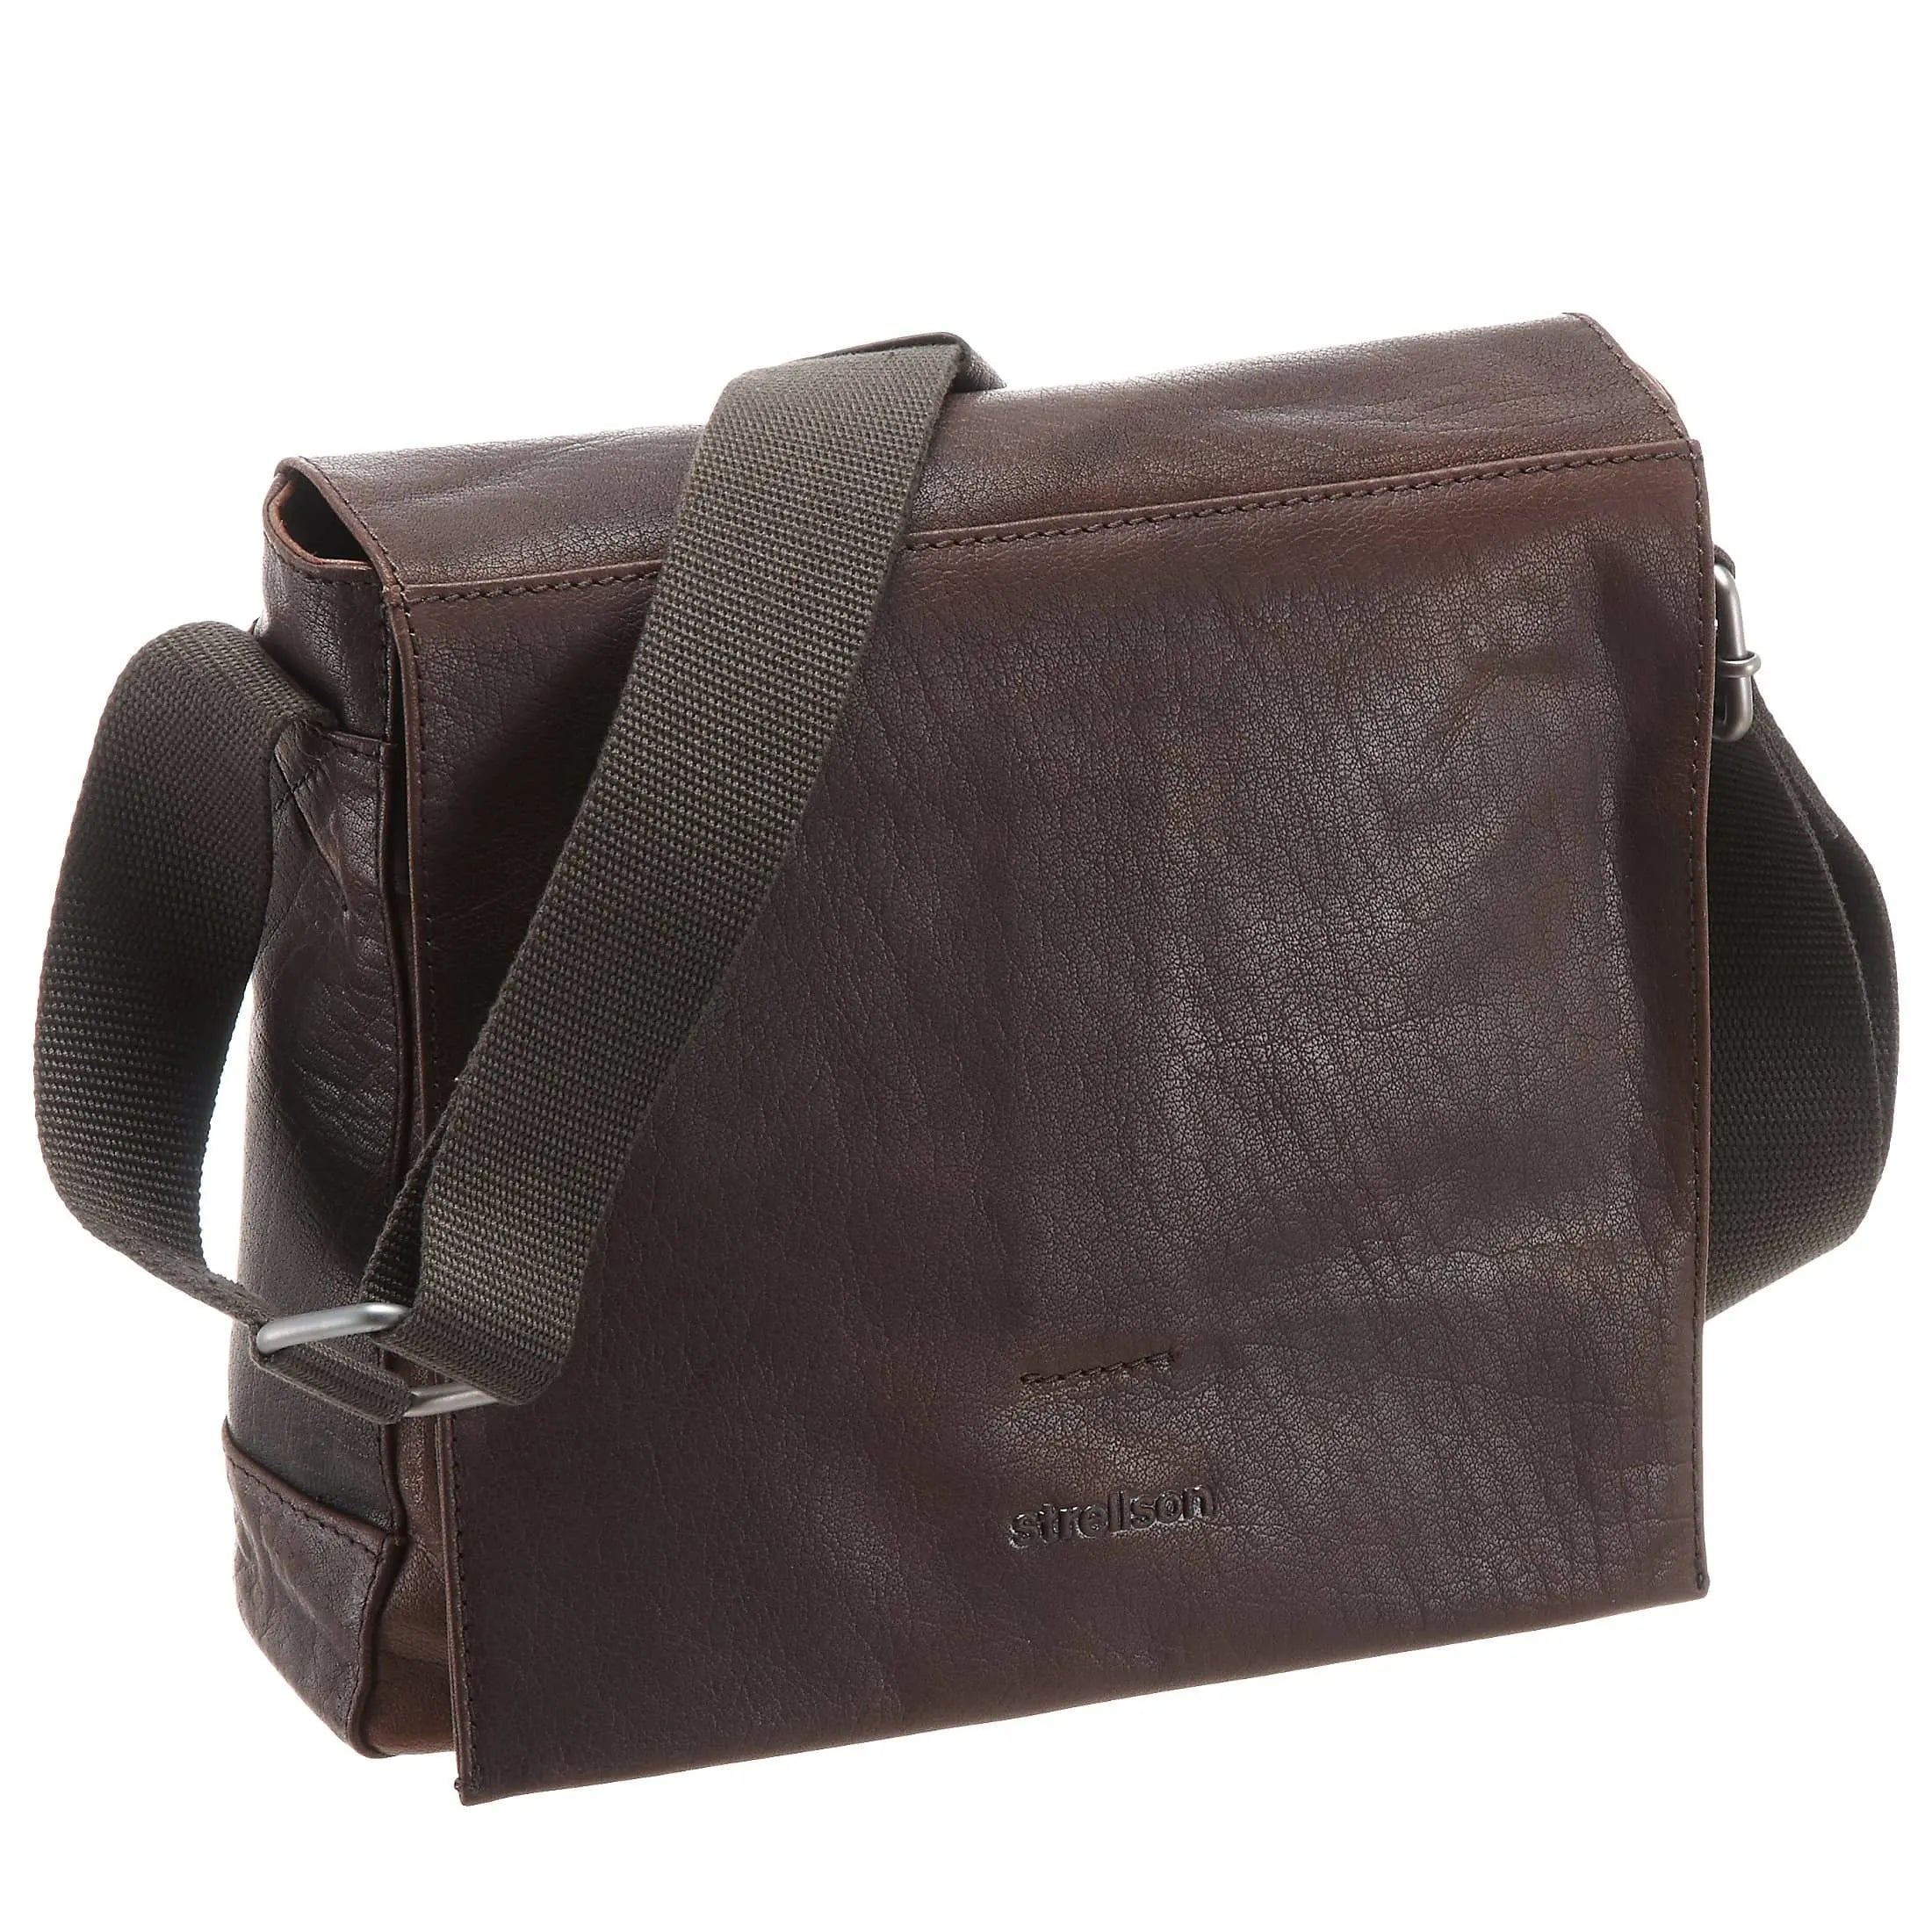 Strellson Coleman 2.0 shoulder bag SVF 28 cm - dark brown